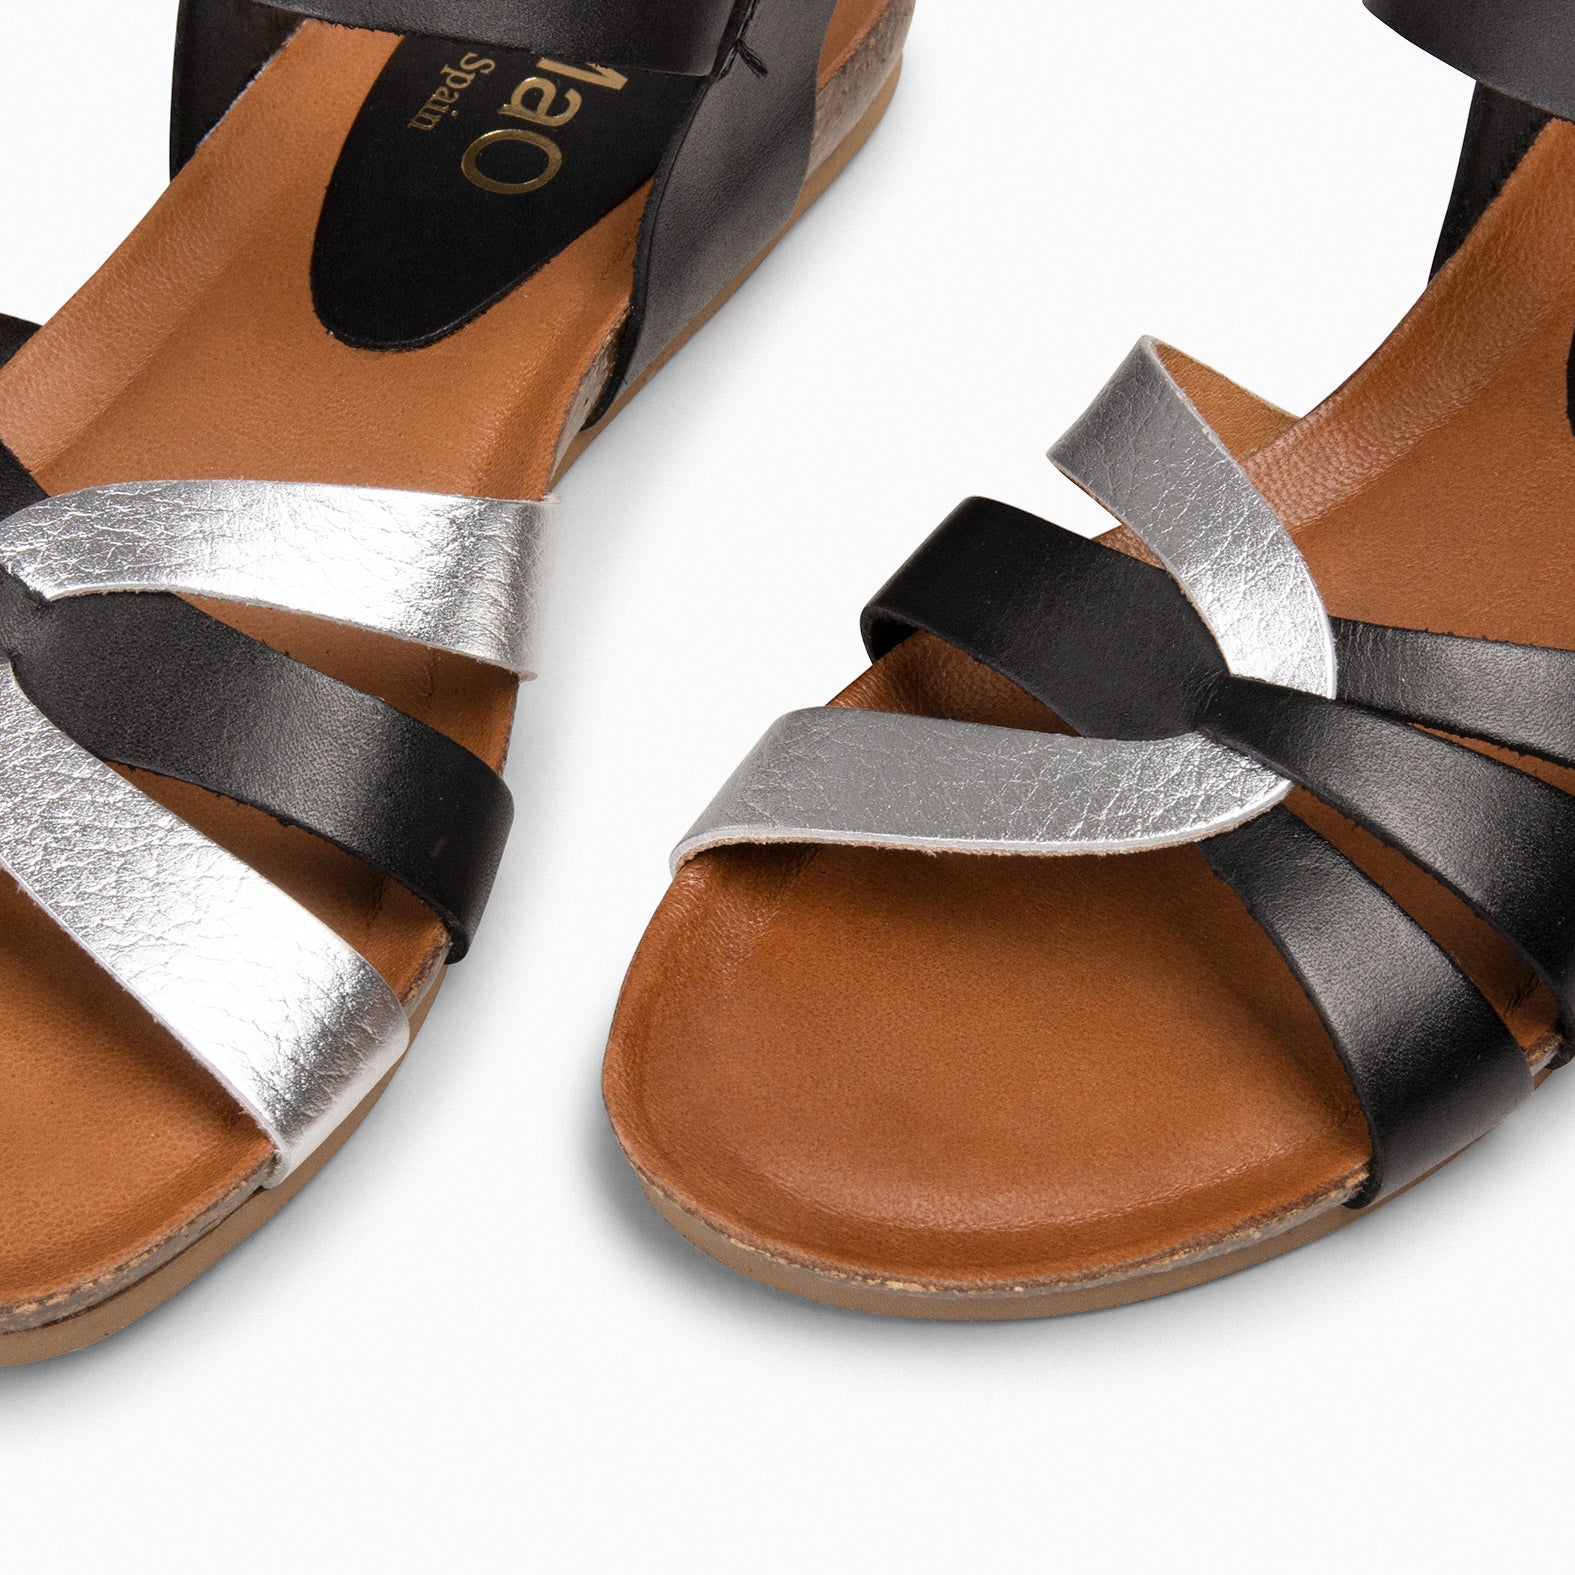 SALOMÉ - BLACK Flat Sandals